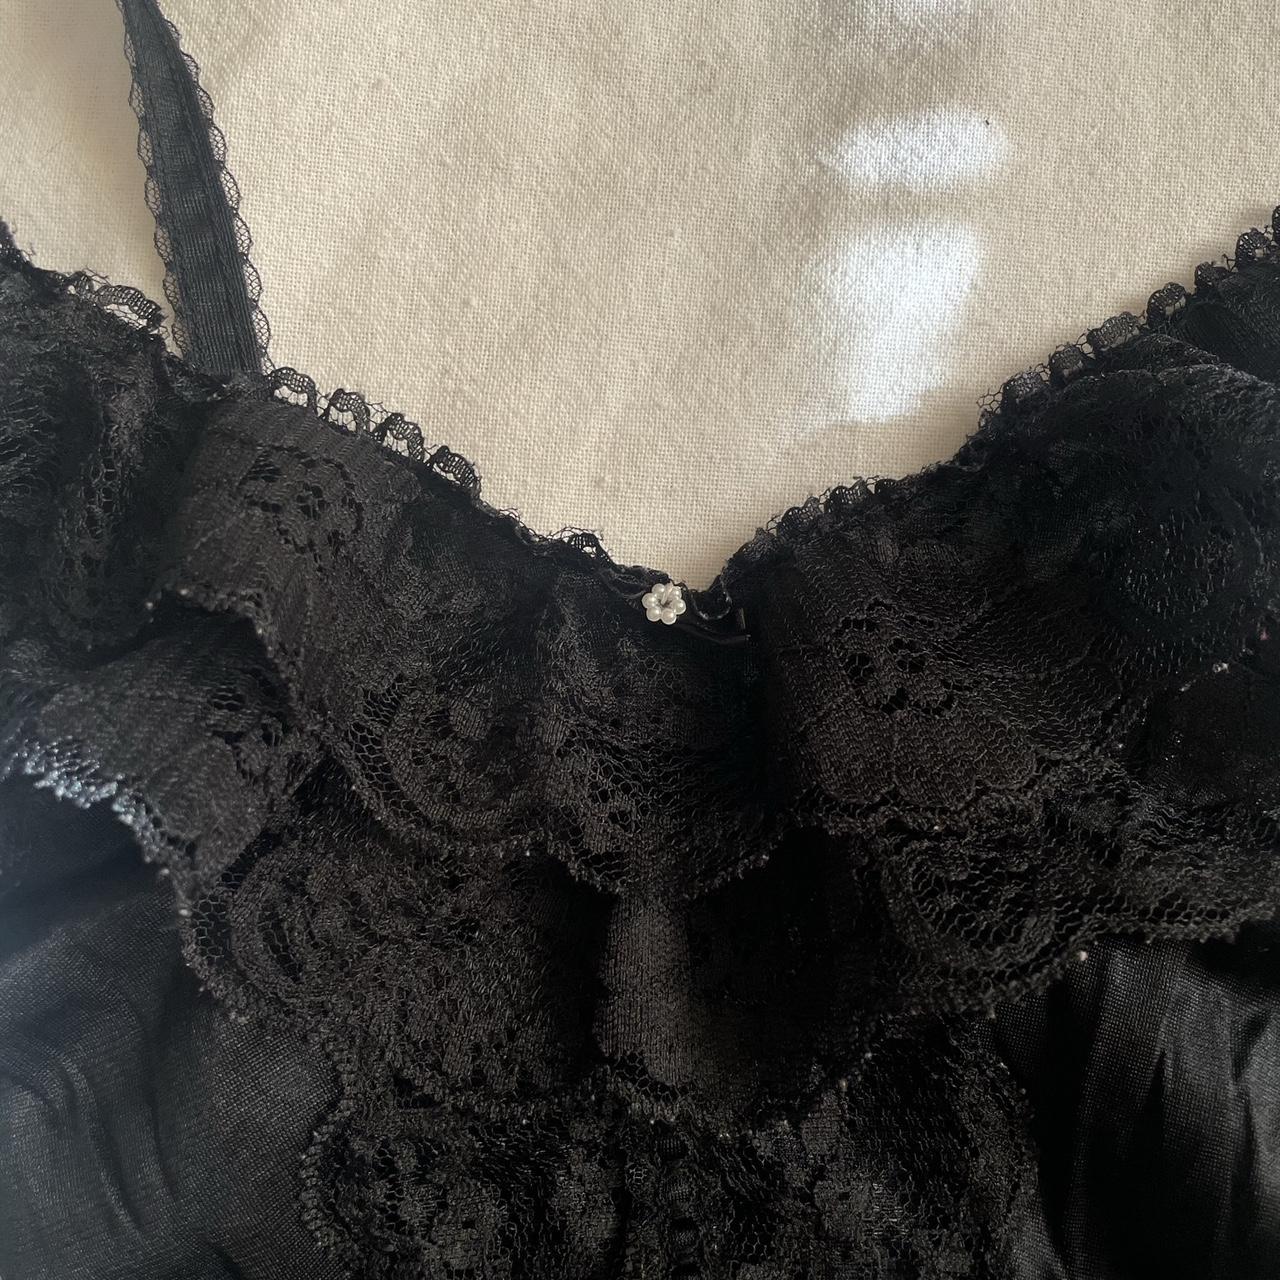 little black lace lingerie bodysuit loungewear 🖤 - Depop